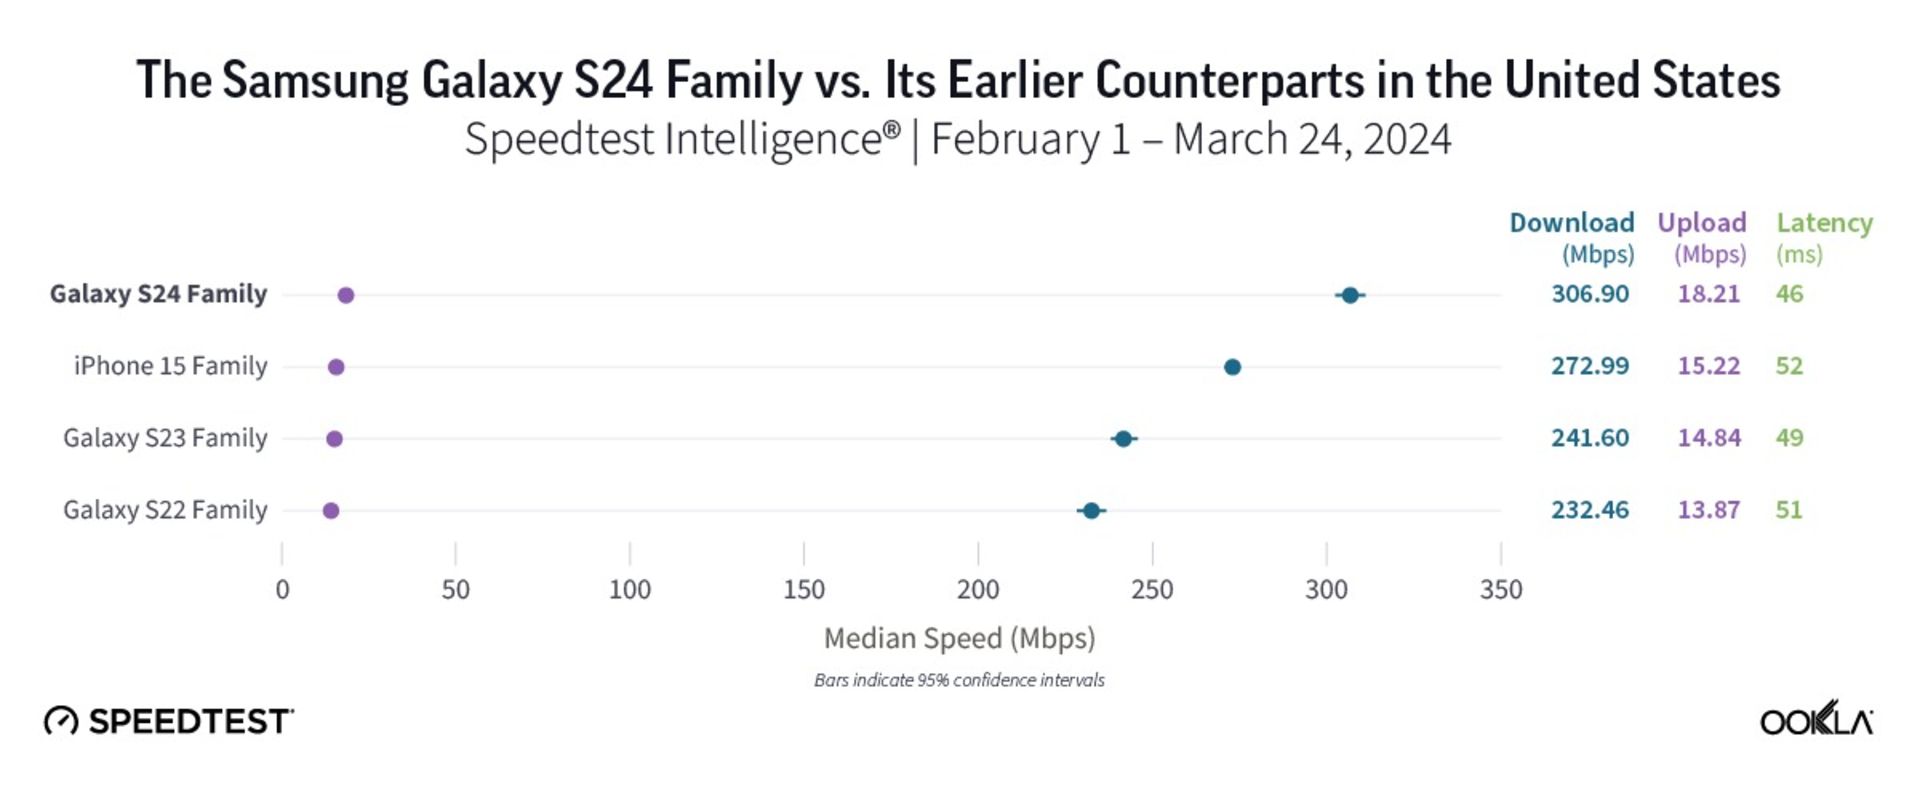 سرعت اینترنت گلکسی اس ۲۴ در مقایسه با آیفون ۱۵ در آمریکا